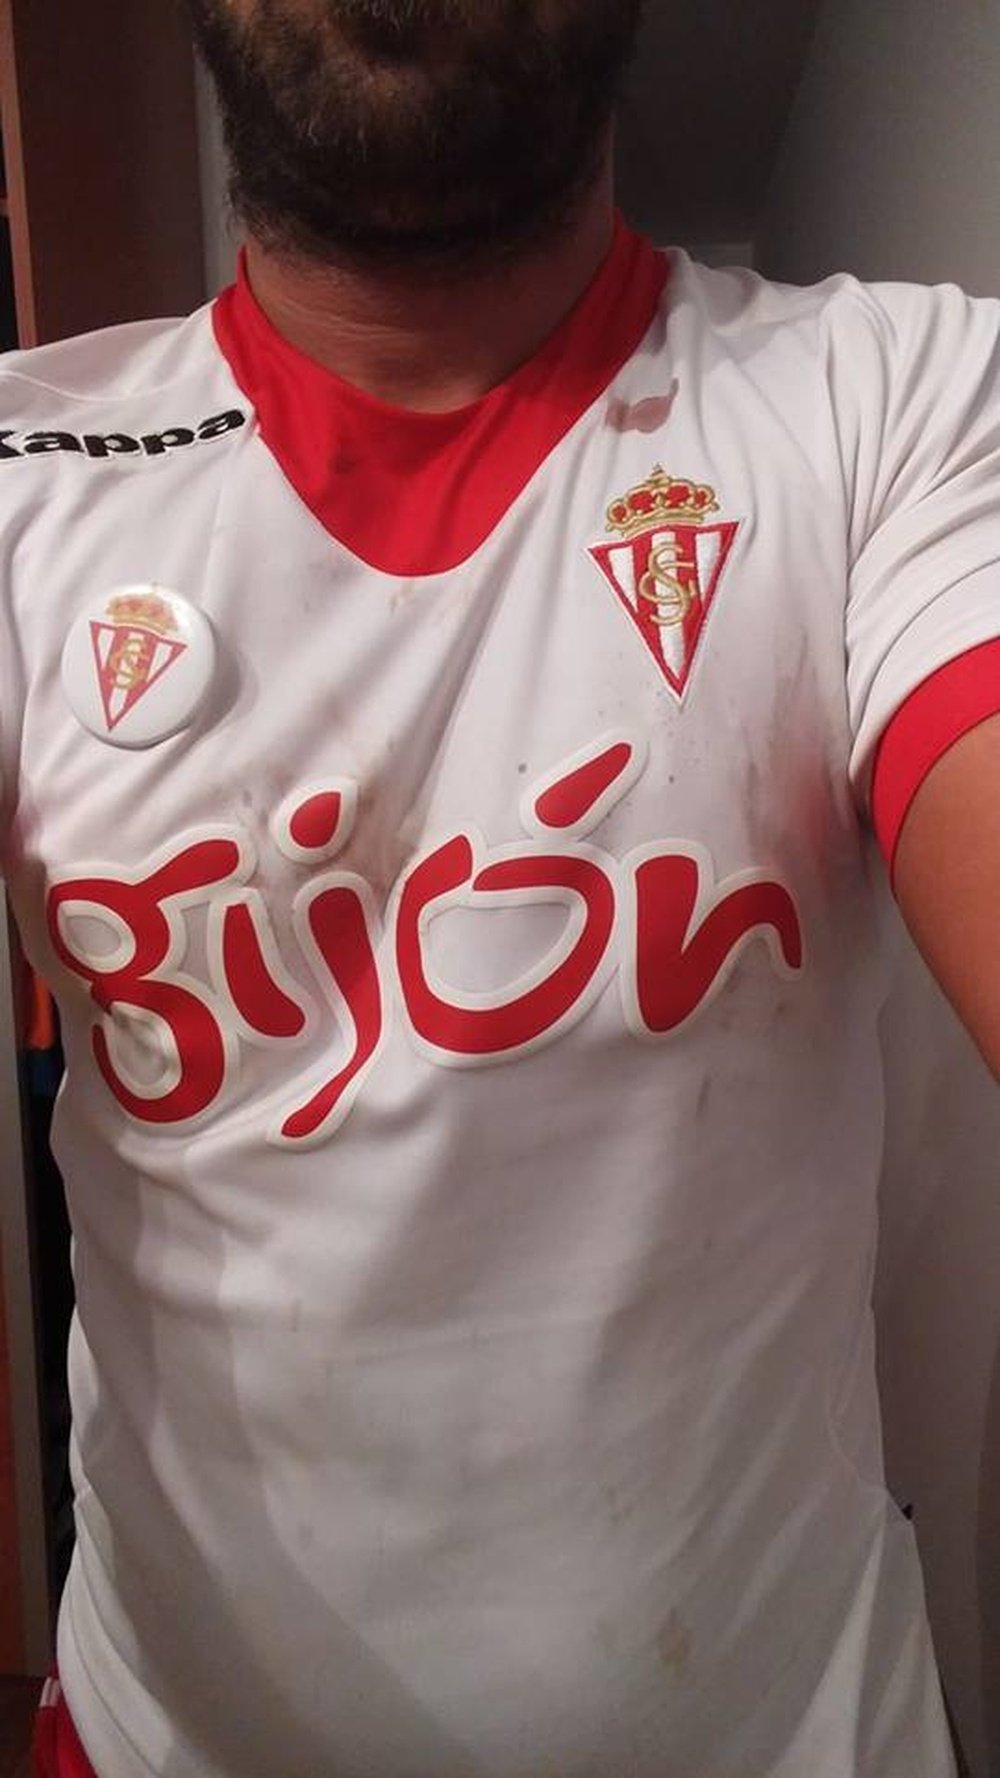 Un joven recibe una paliza por llevar una camiseta del Sporting. Facebook/MiguelARodri